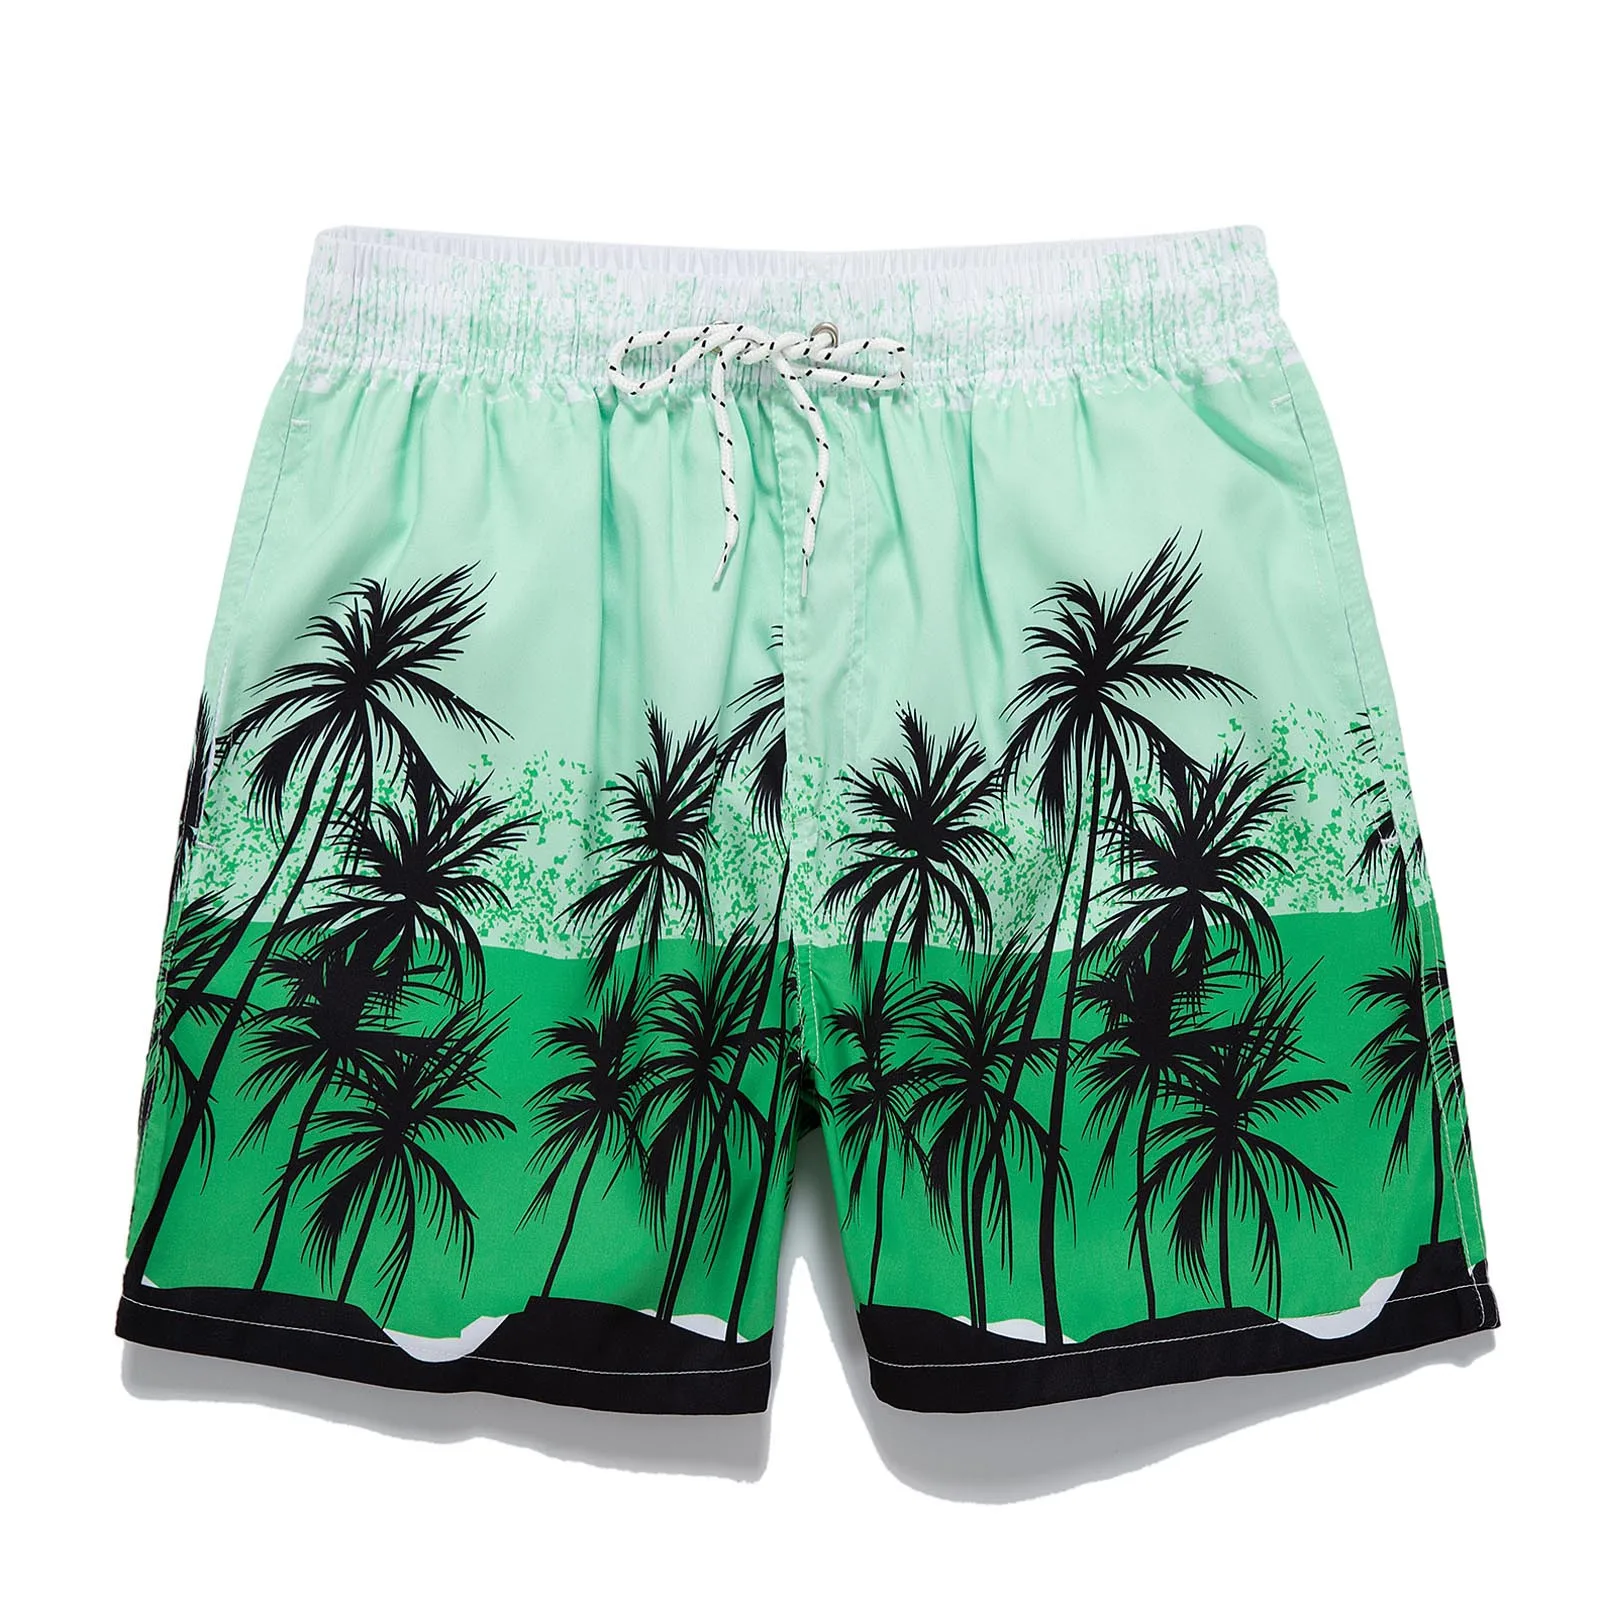 

Мужские шорты для плавания, модные контрастные пляжные шорты с принтом пальмы, бриджи на завязках, купальник до колена, гавайский купальник для серфинга